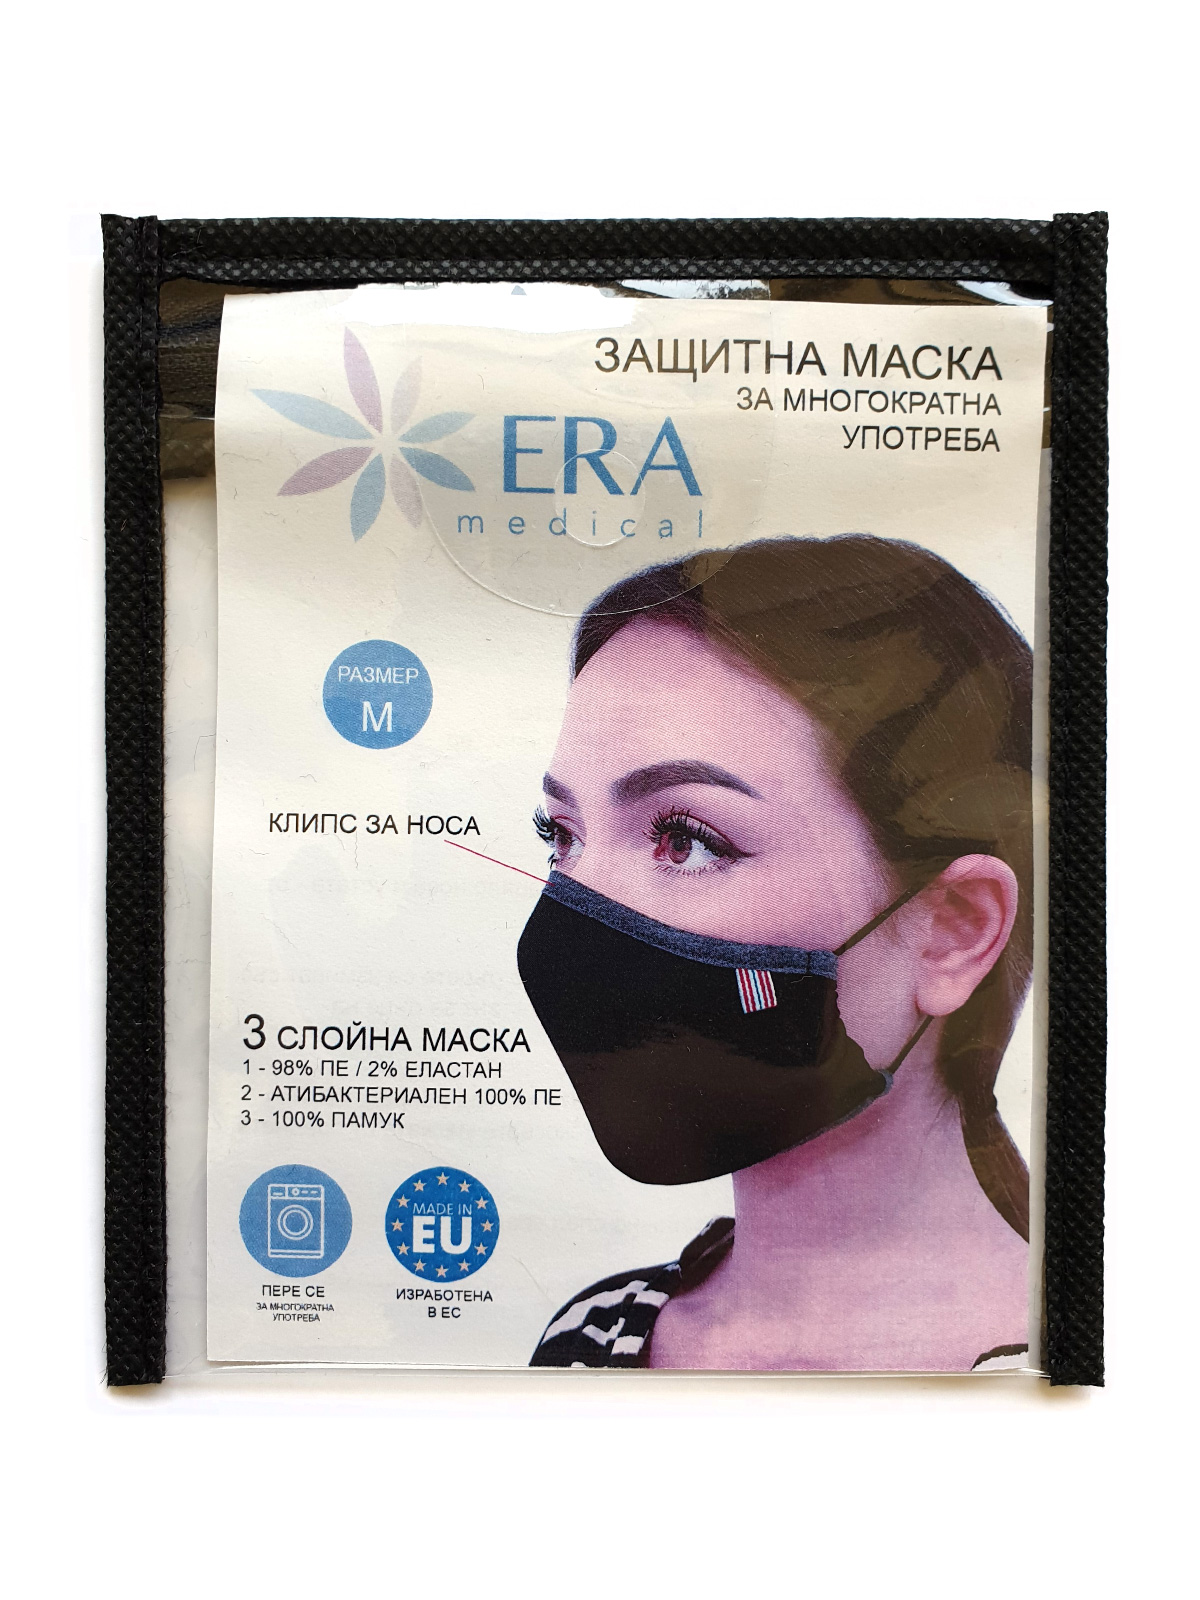  επαναχρησιμοποιήσιμη μάσκα μαύρη  - 10682 - € 2.76 img4